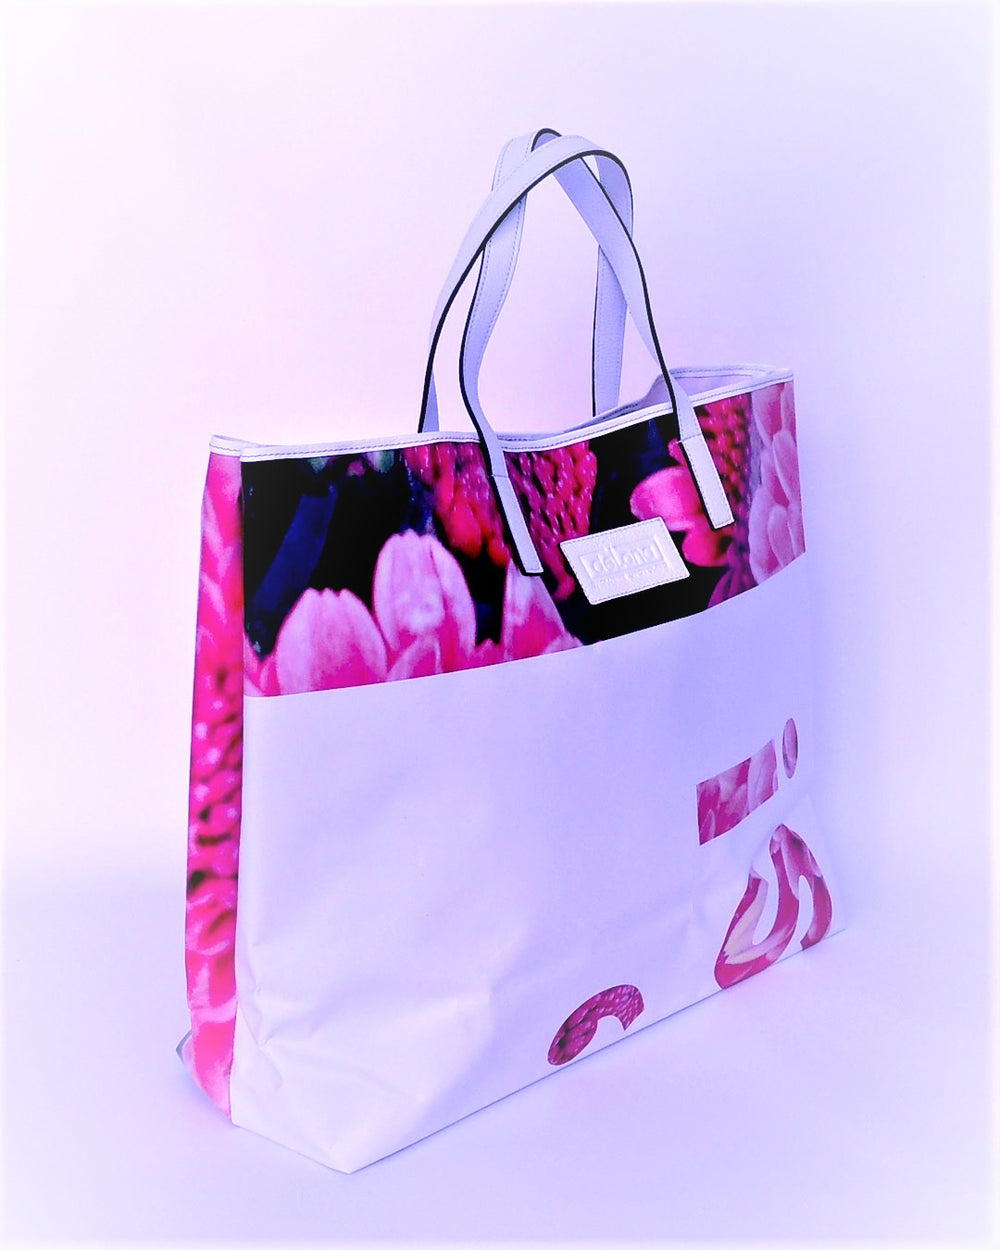 TOTE BAG: Estilo y funcionalidad con nuestros shopper bags de lonas publicitarias